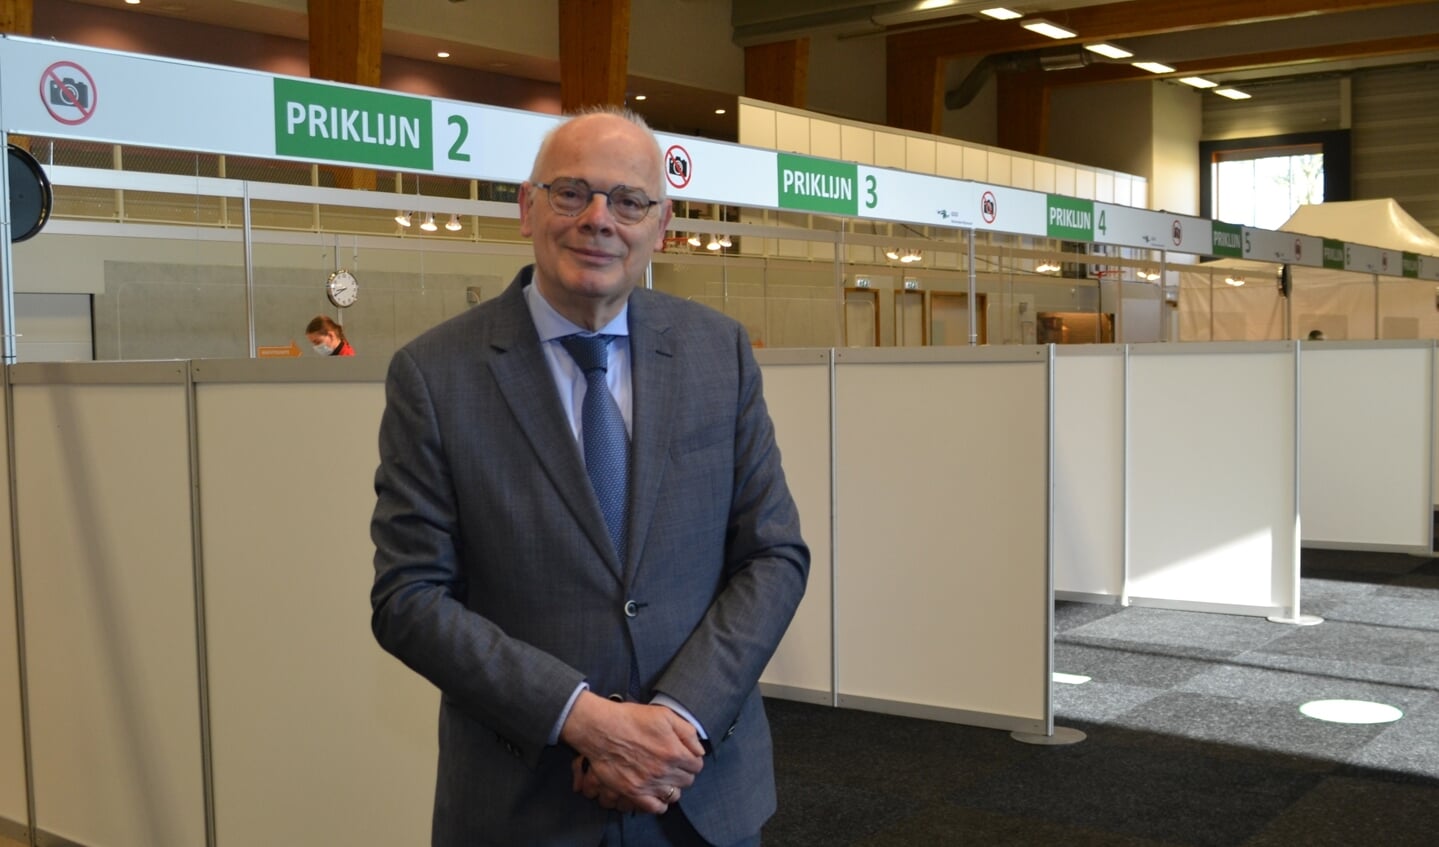 Burgemeester Jan van Belzen: “Ik hoop dat Barendrechters zich massaal laten vaccineren.” 